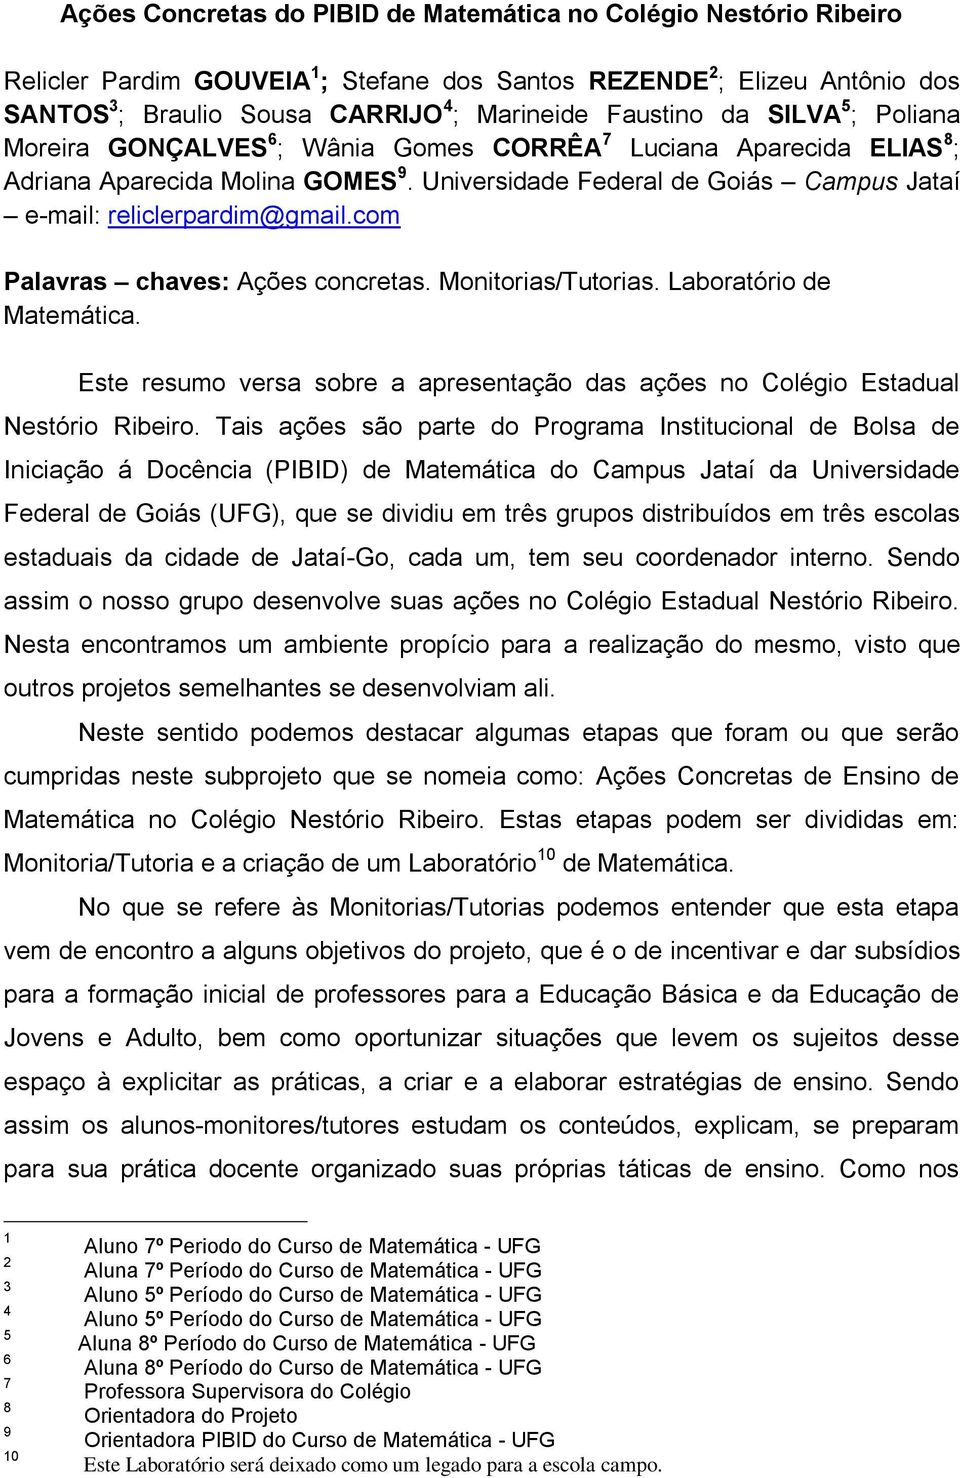 Universidade Federal de Goiás Campus Jataí e-mail: reliclerpardim@gmail.com Palavras chaves: Ações concretas. Monitorias/Tutorias. Laboratório de Matemática.